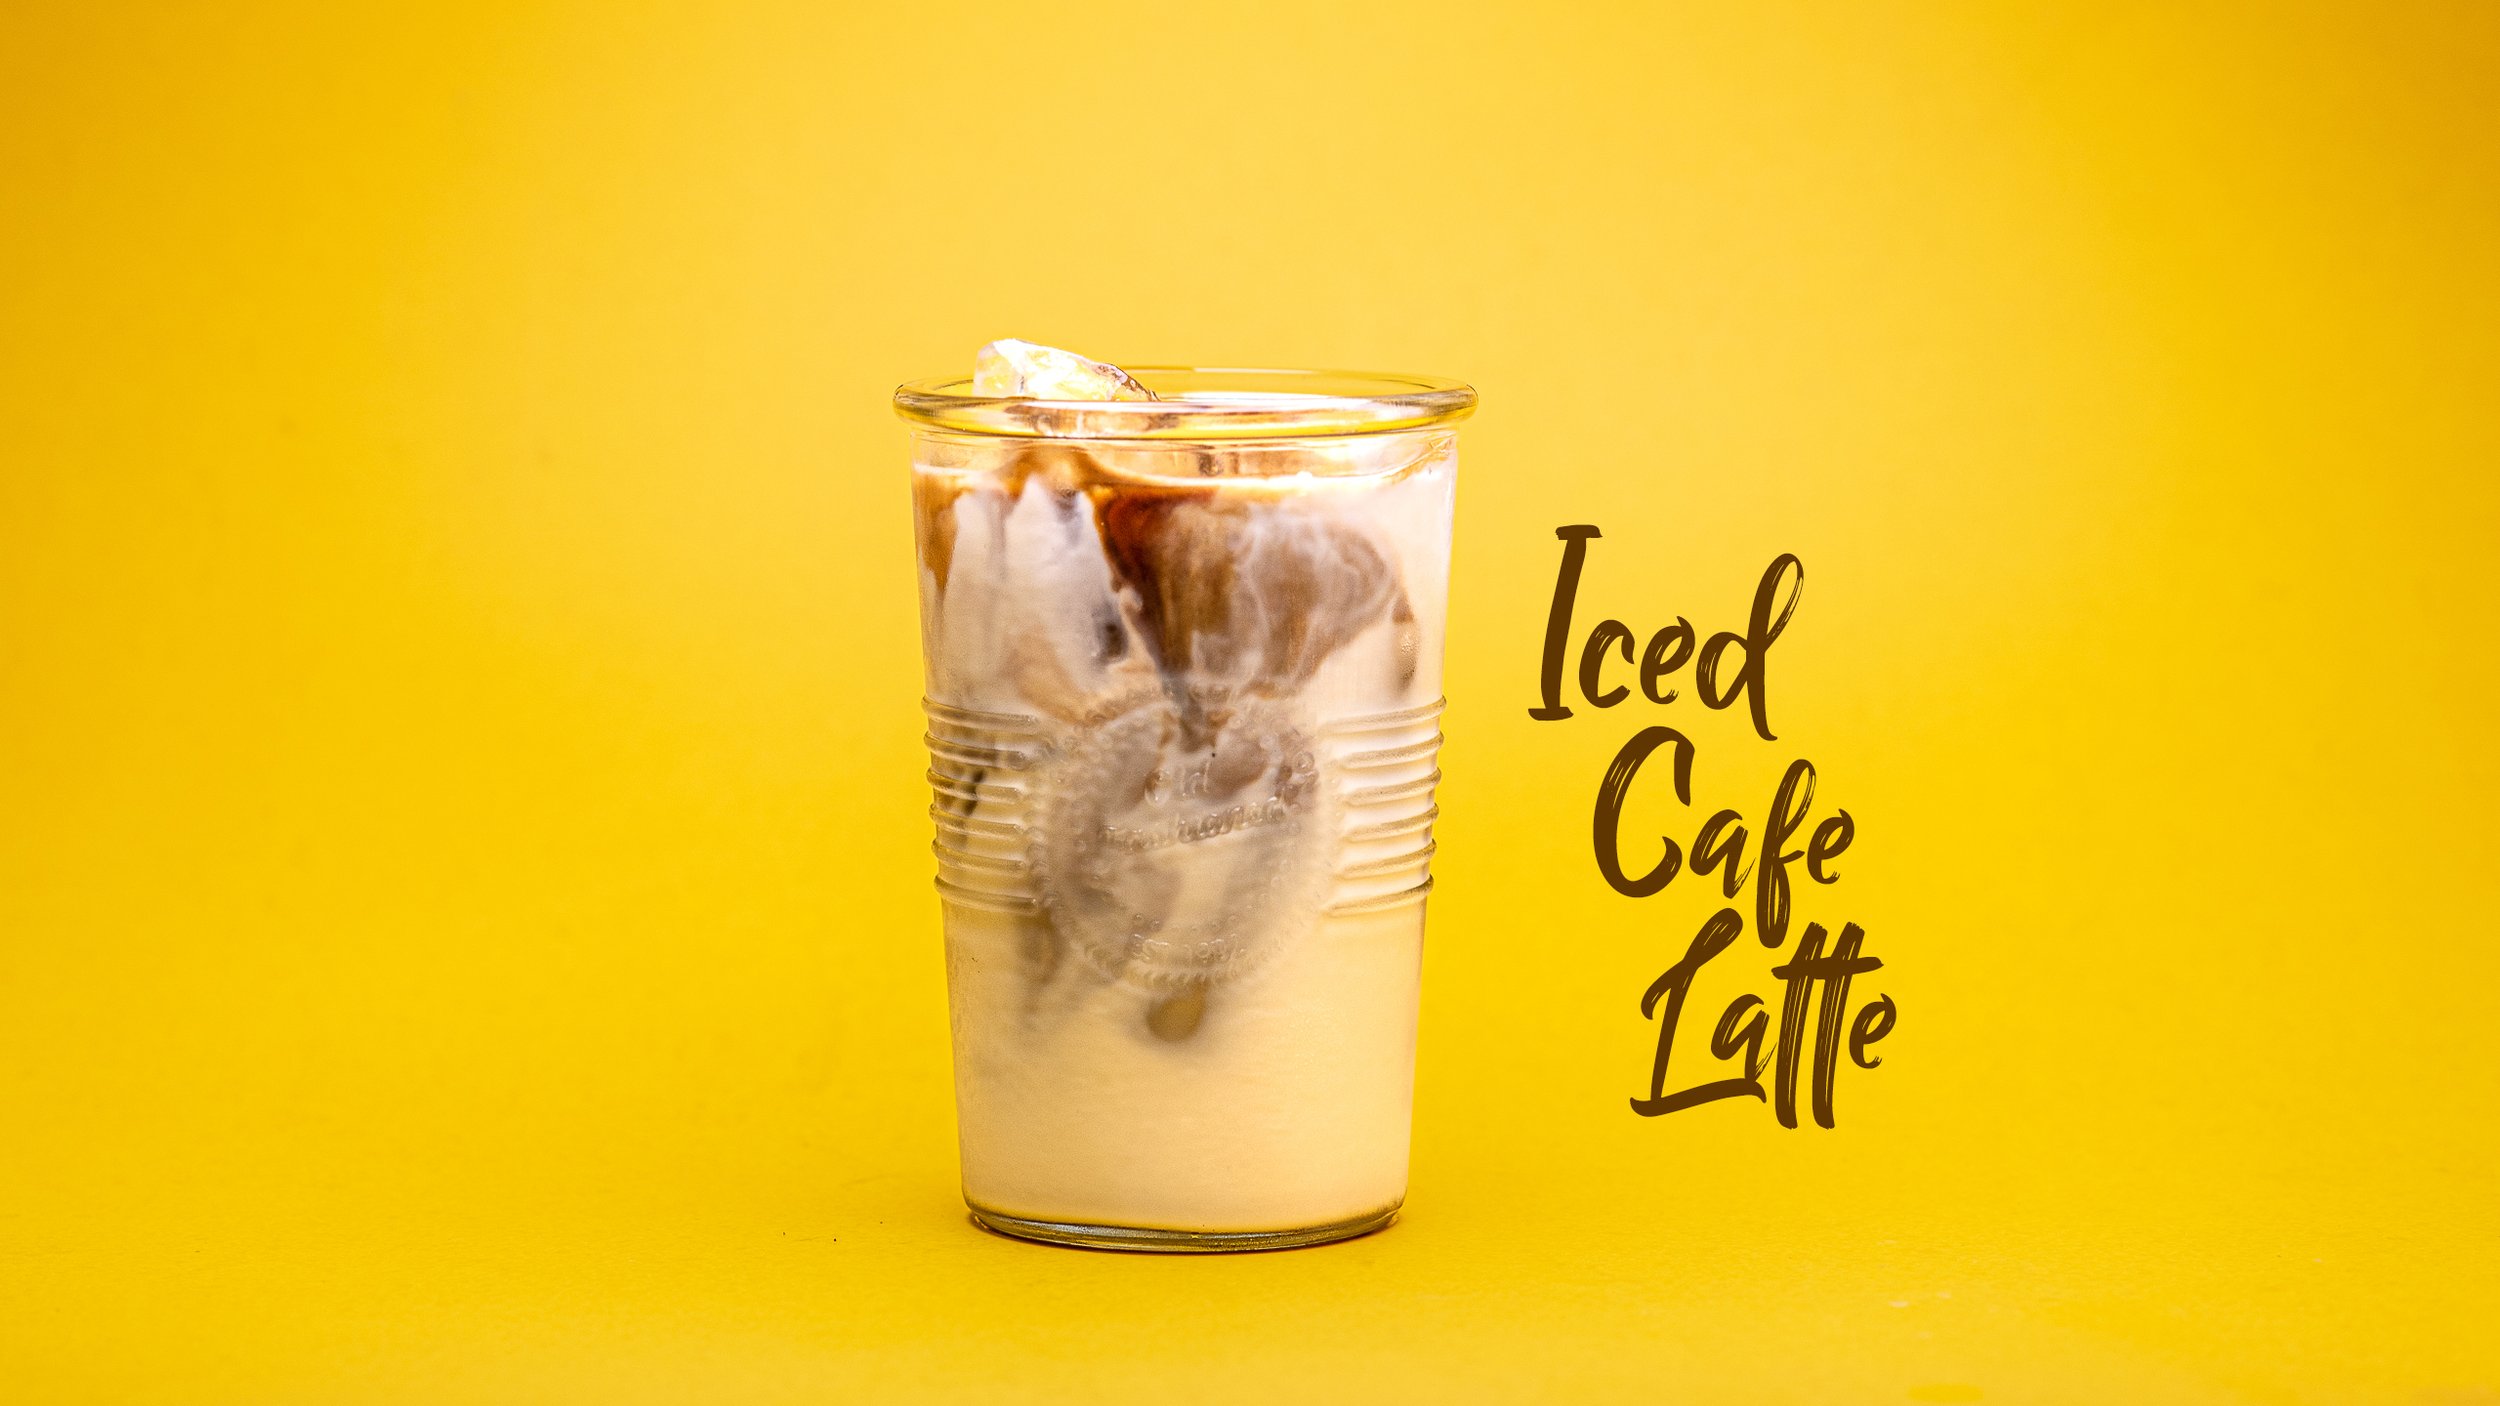 ICED CAFE LATTE.jpg